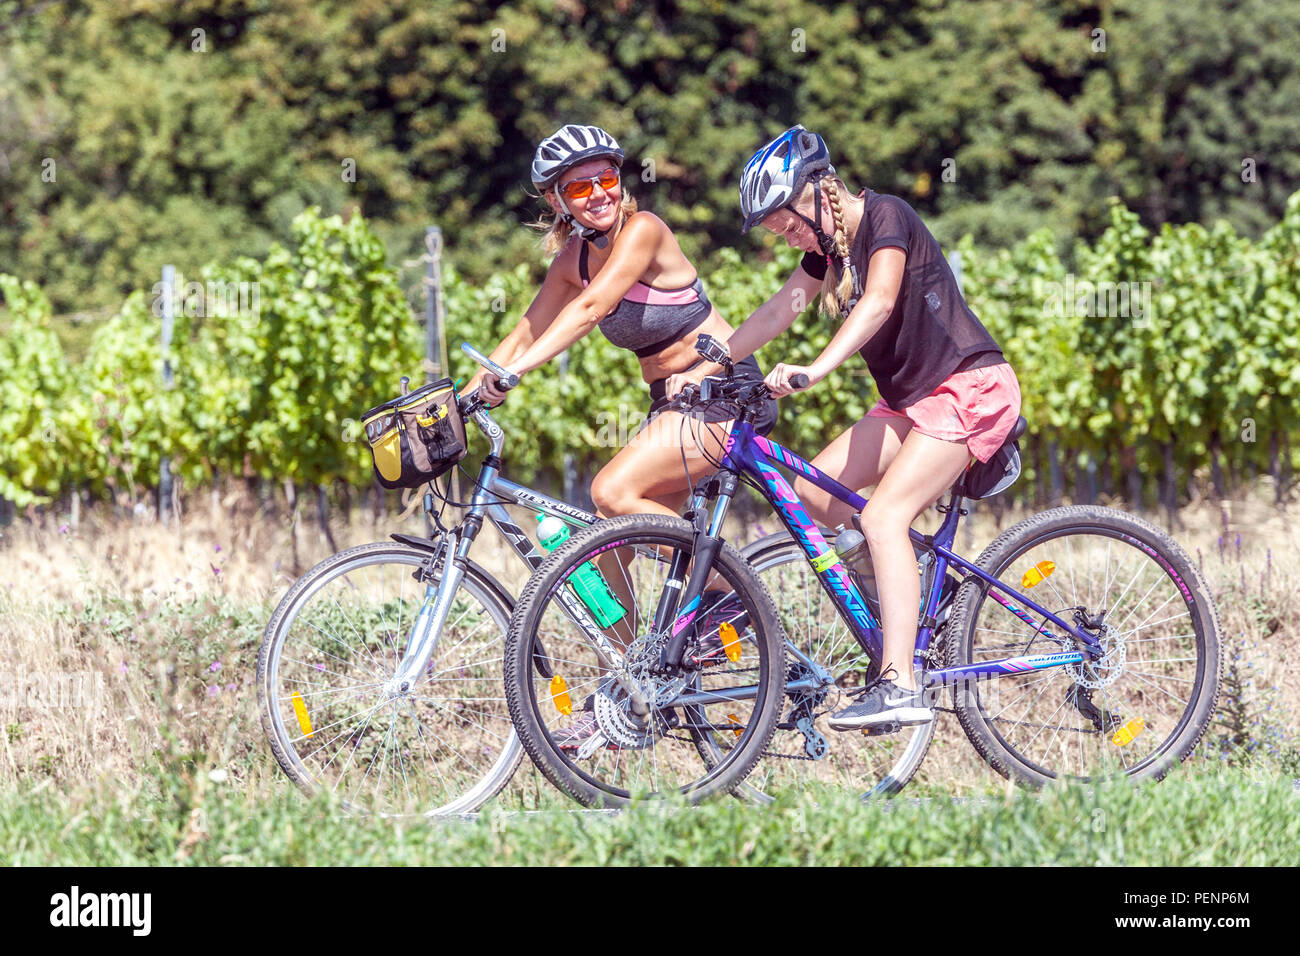 Deux femmes faisant du vélo dans la campagne des vignobles, Moravie du Sud, République tchèque femme de vélo riant Banque D'Images